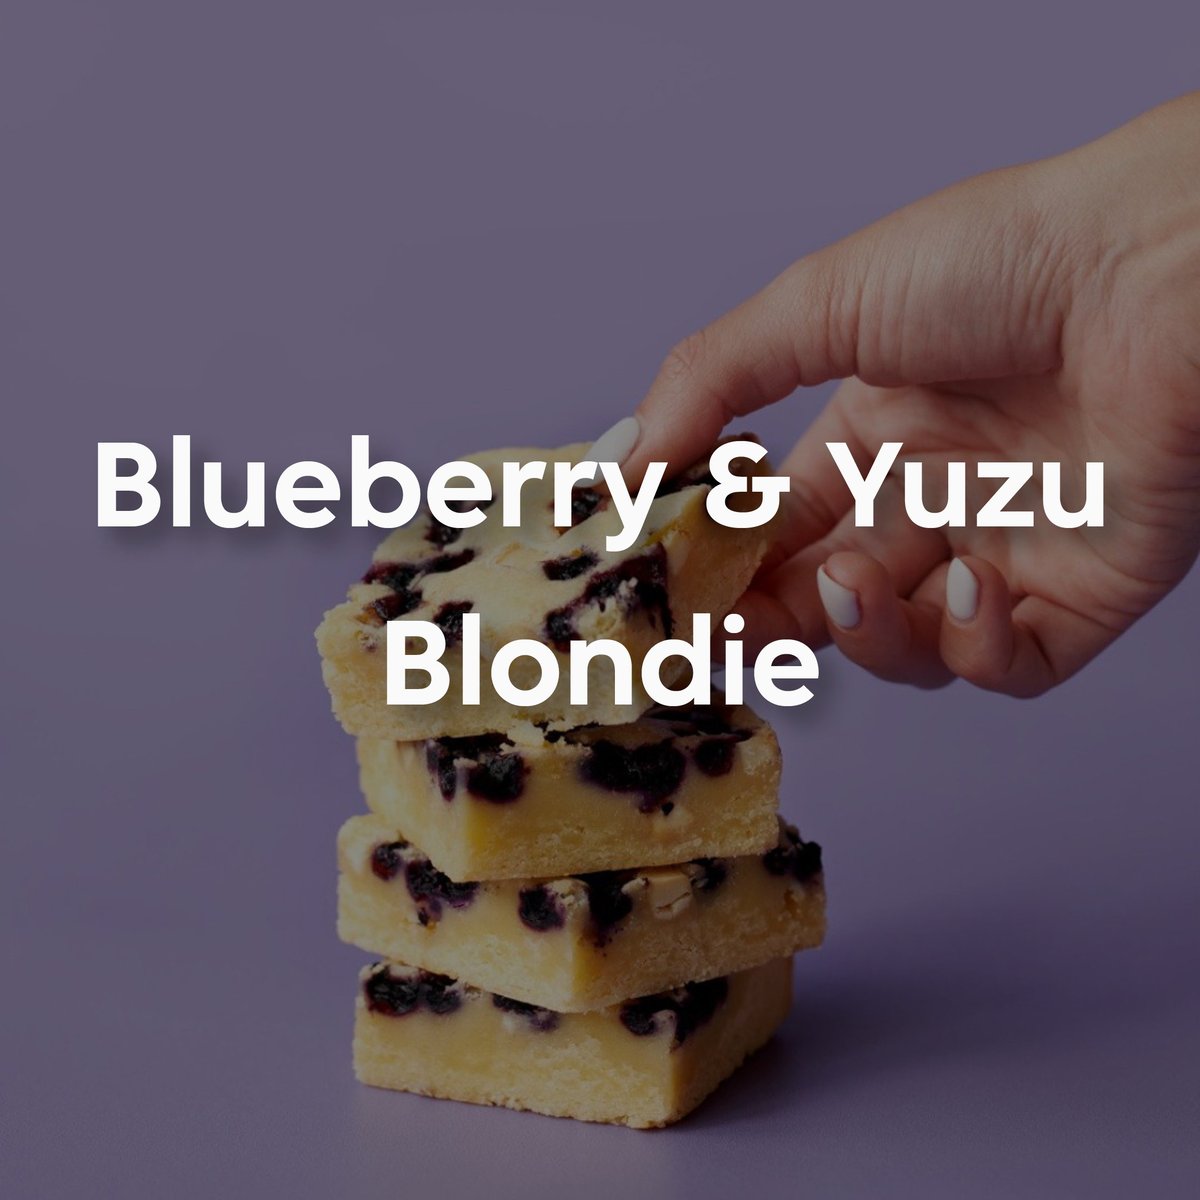 blueb and yuzu blondie 